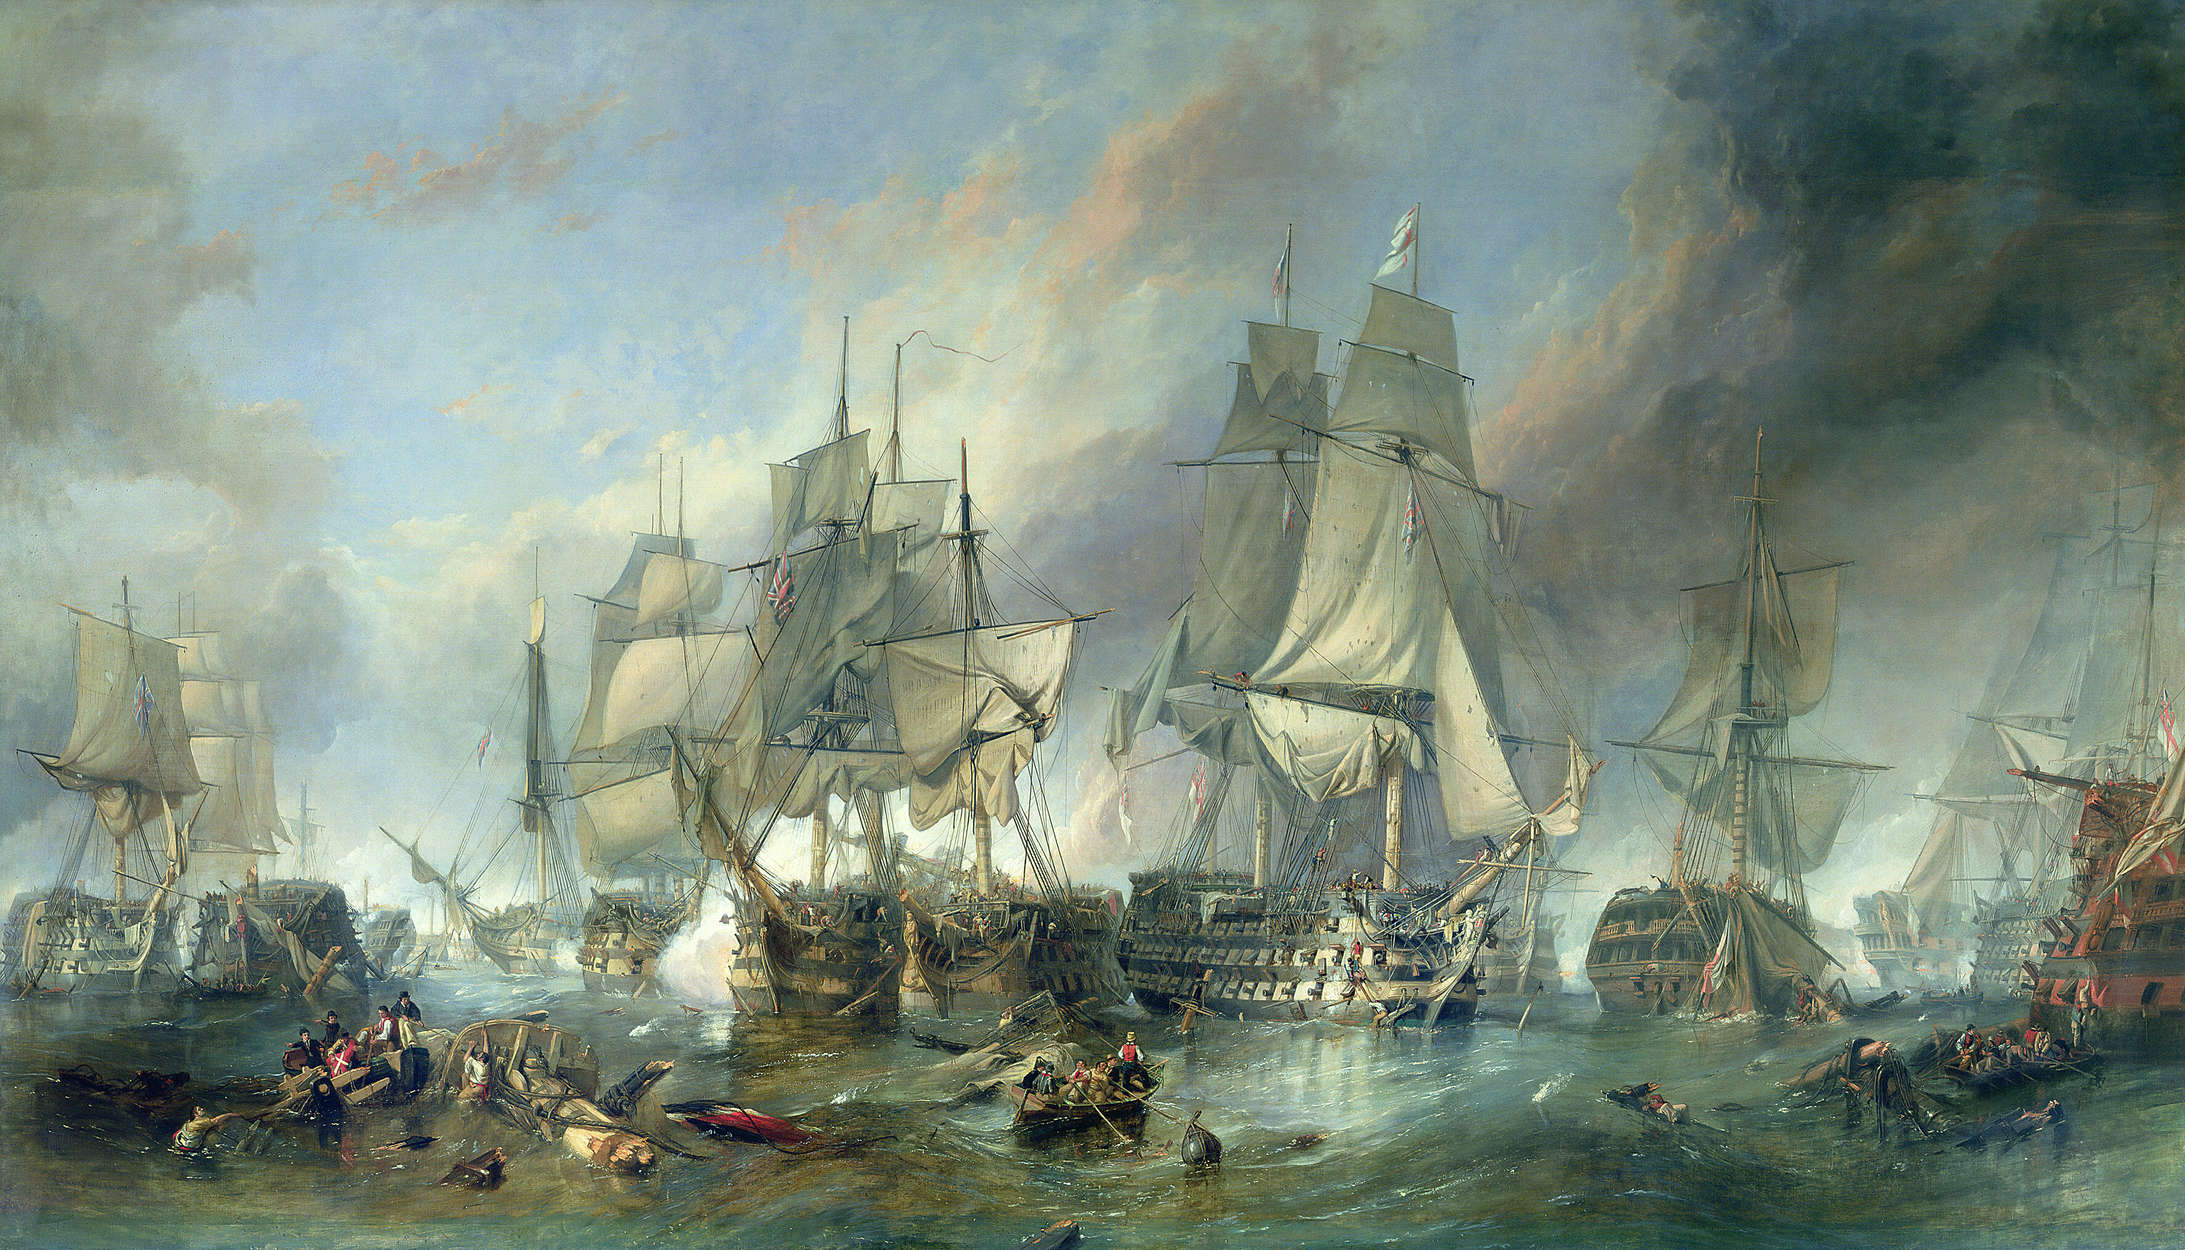             Papier peint panoramique "La bataille de Trafalgar" par Clarkson Stanfield
        